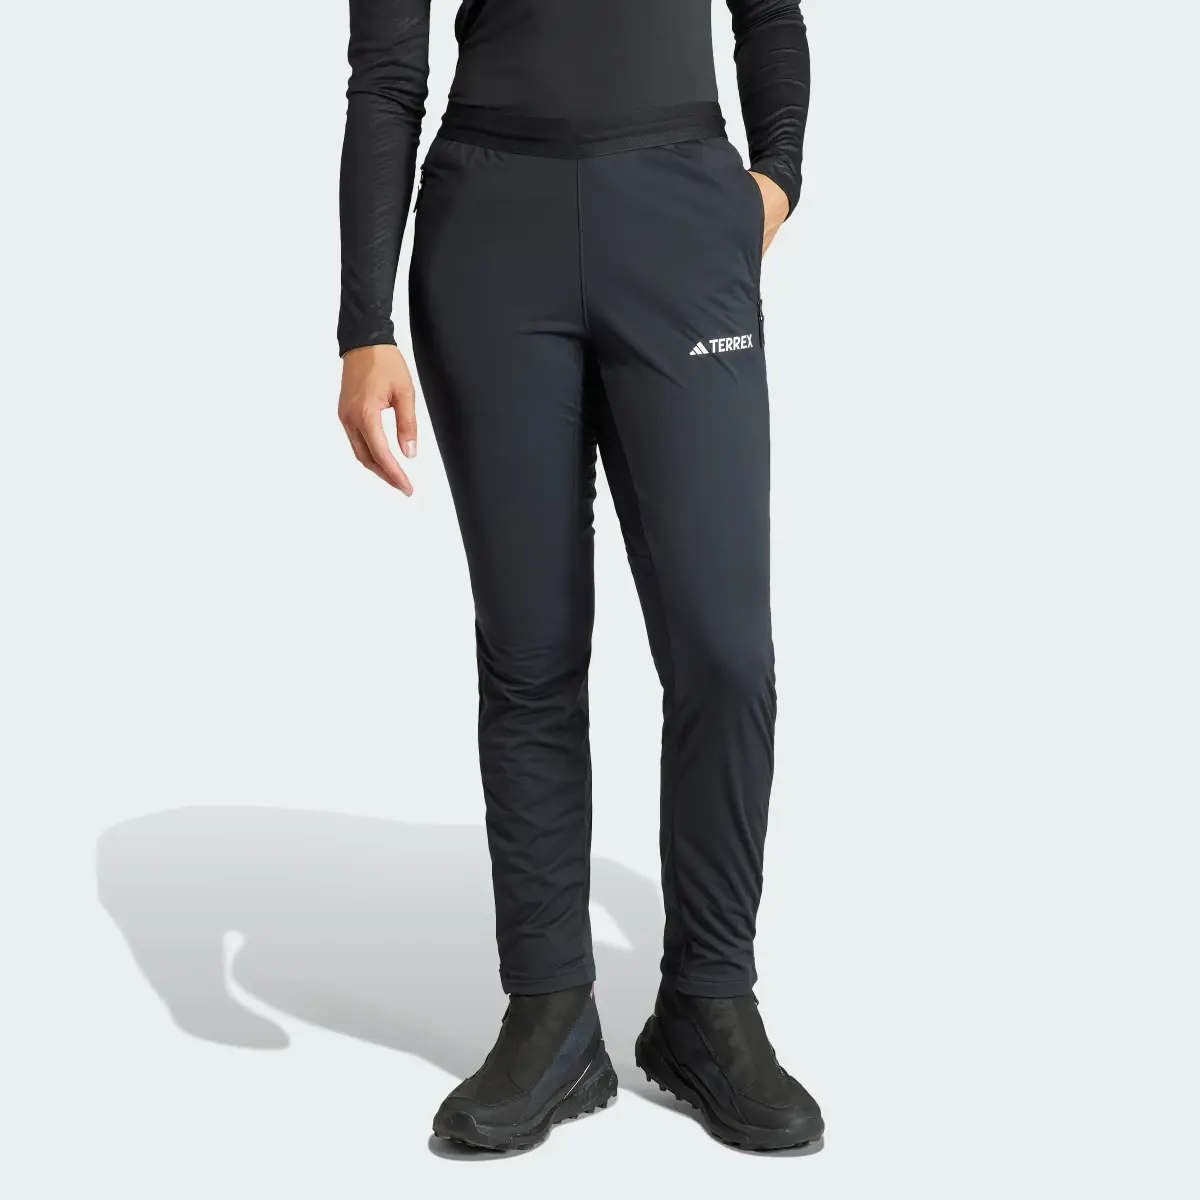 Adidas Spodnie Terrex Xperior Cross Country Ski Soft Shell. 1